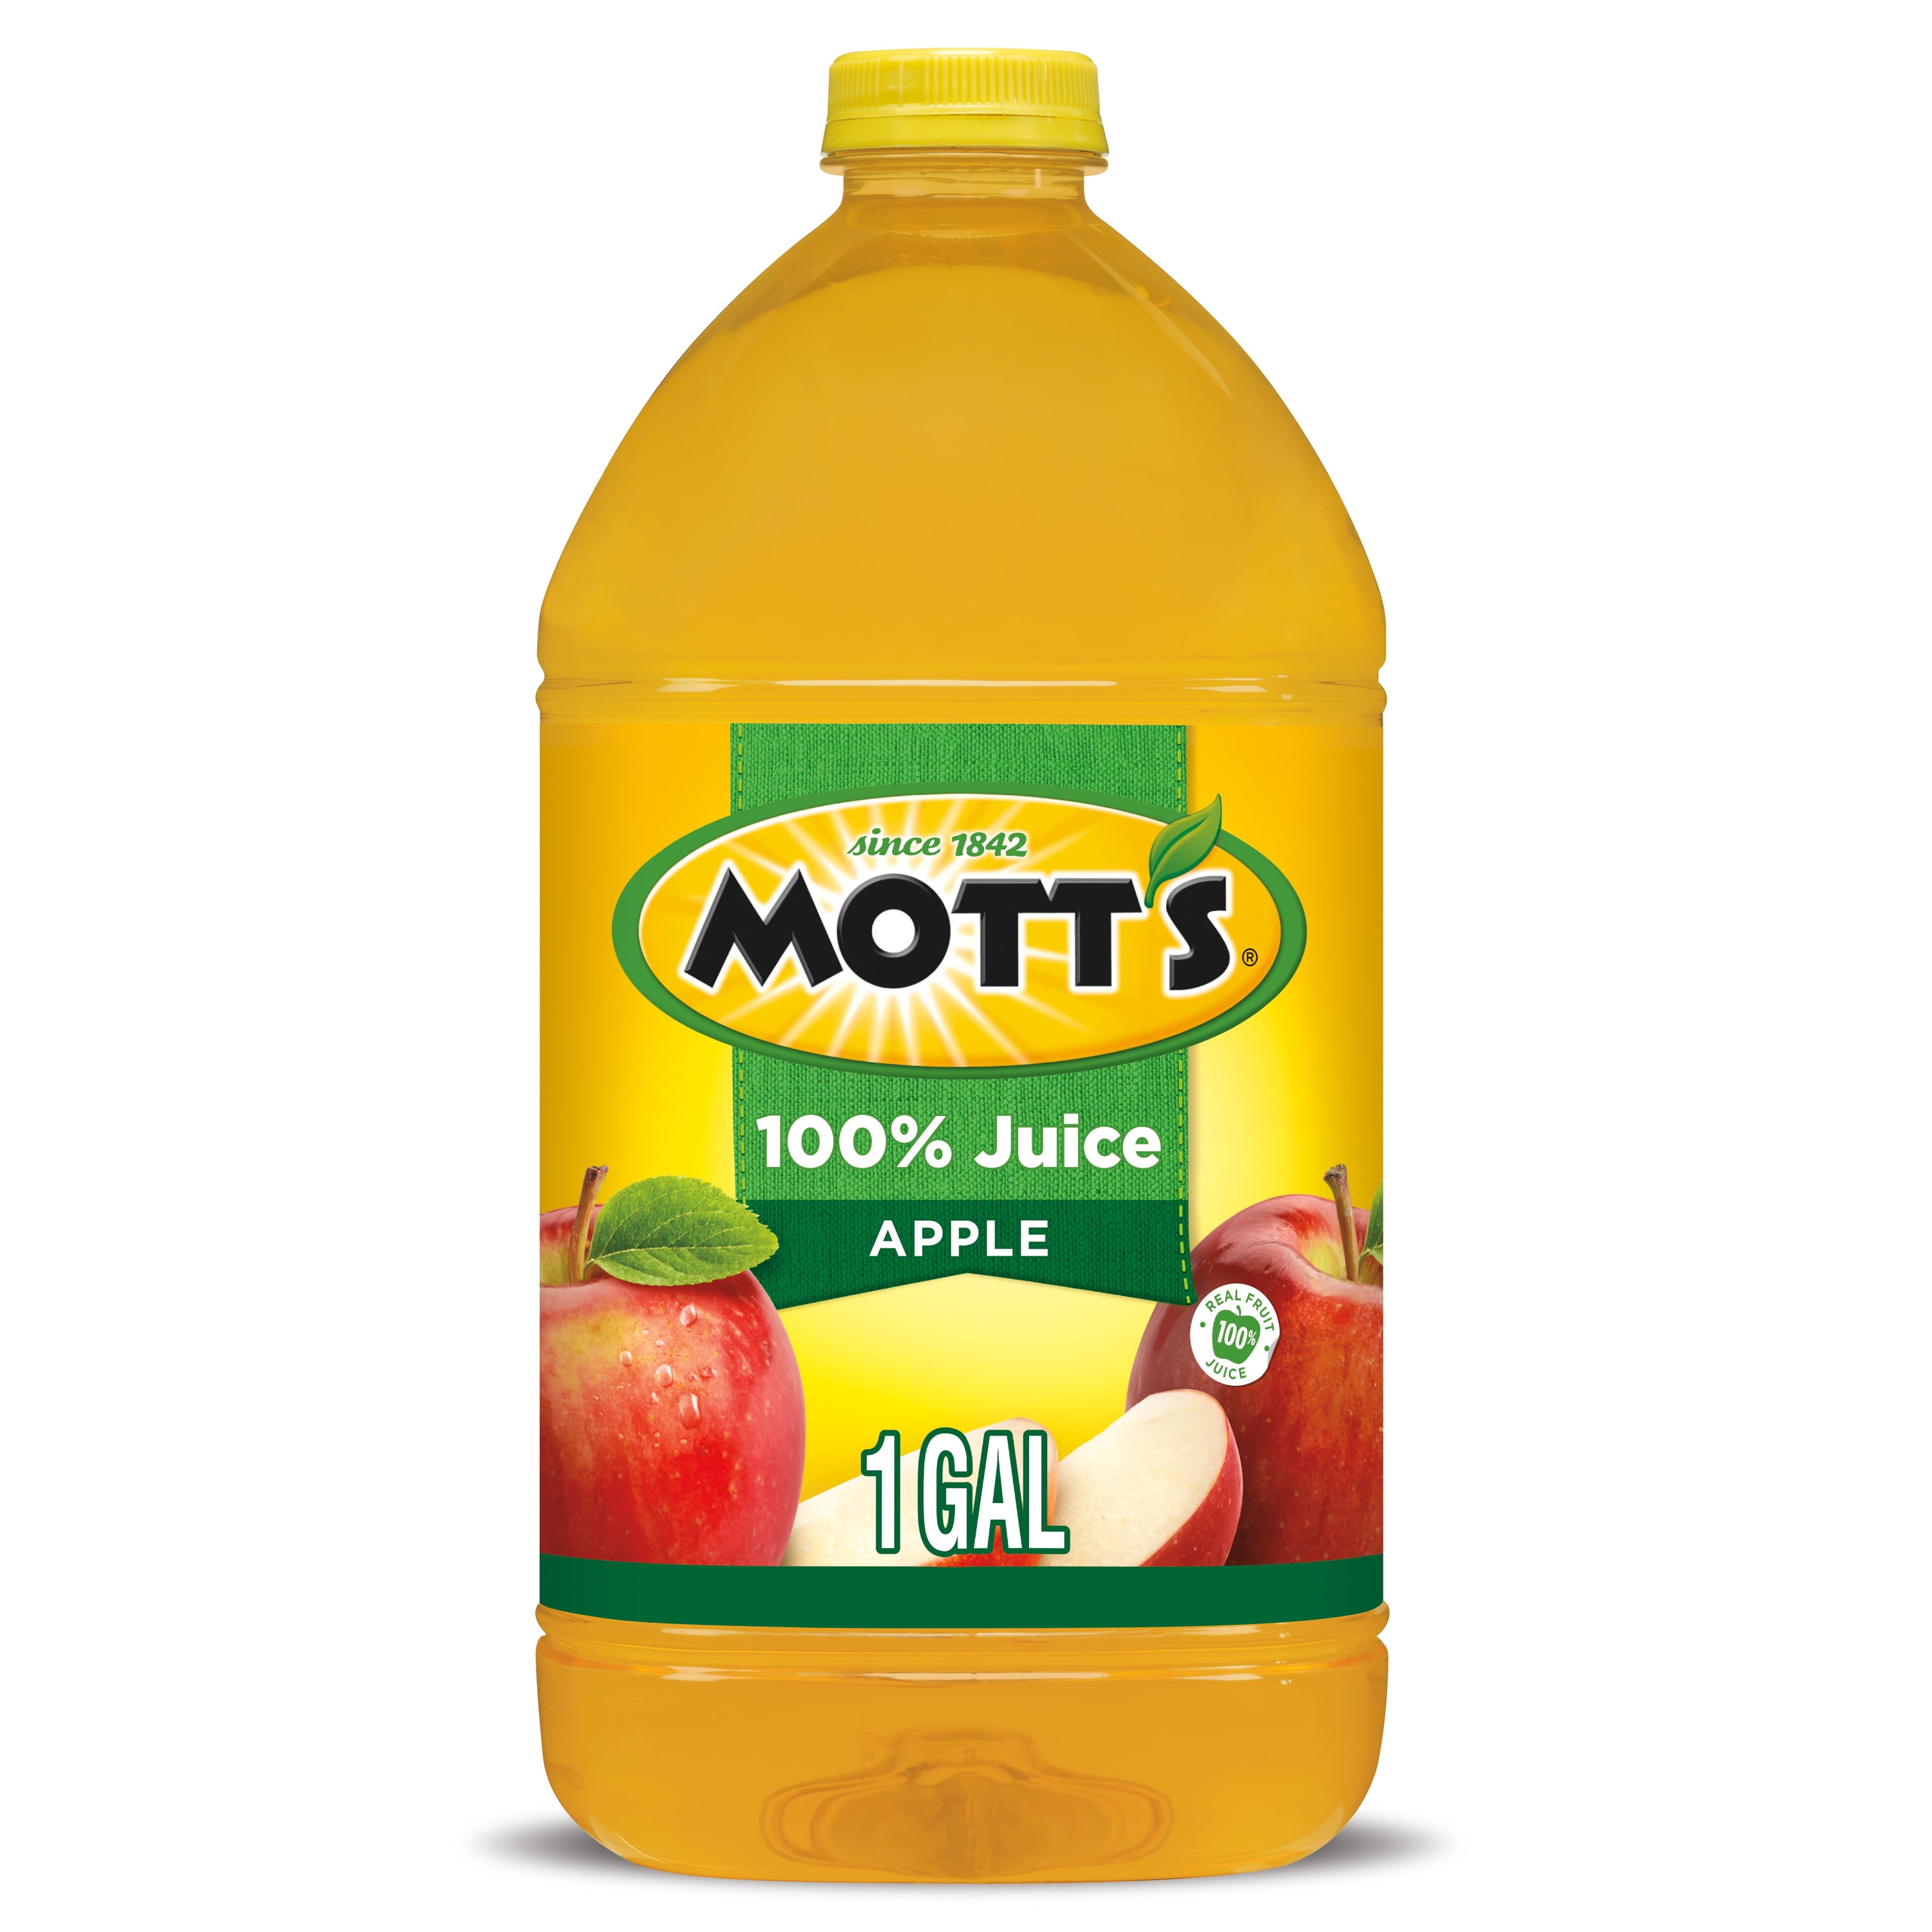 Motts Original Apple Juice, 256 Fluid Ounce - Walmart.com